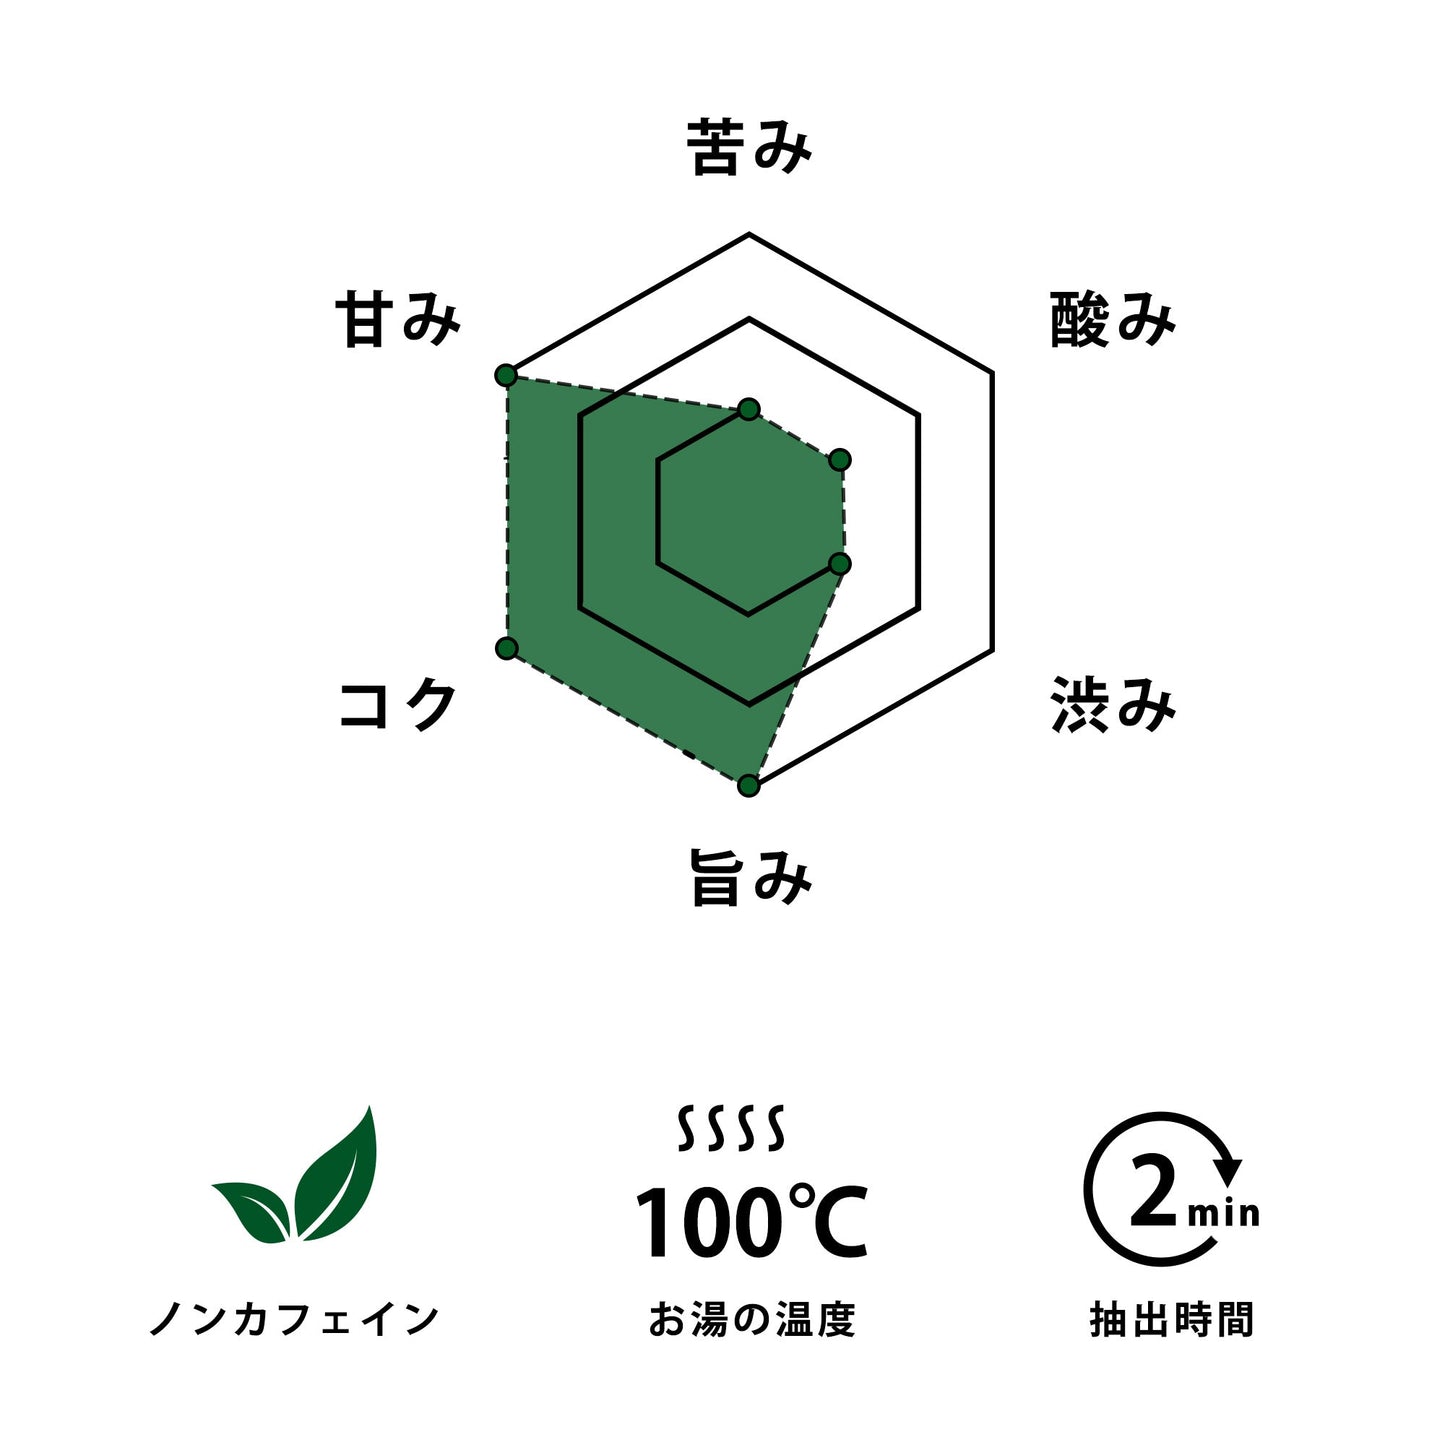 笹団子茶×1パック(2包入り)